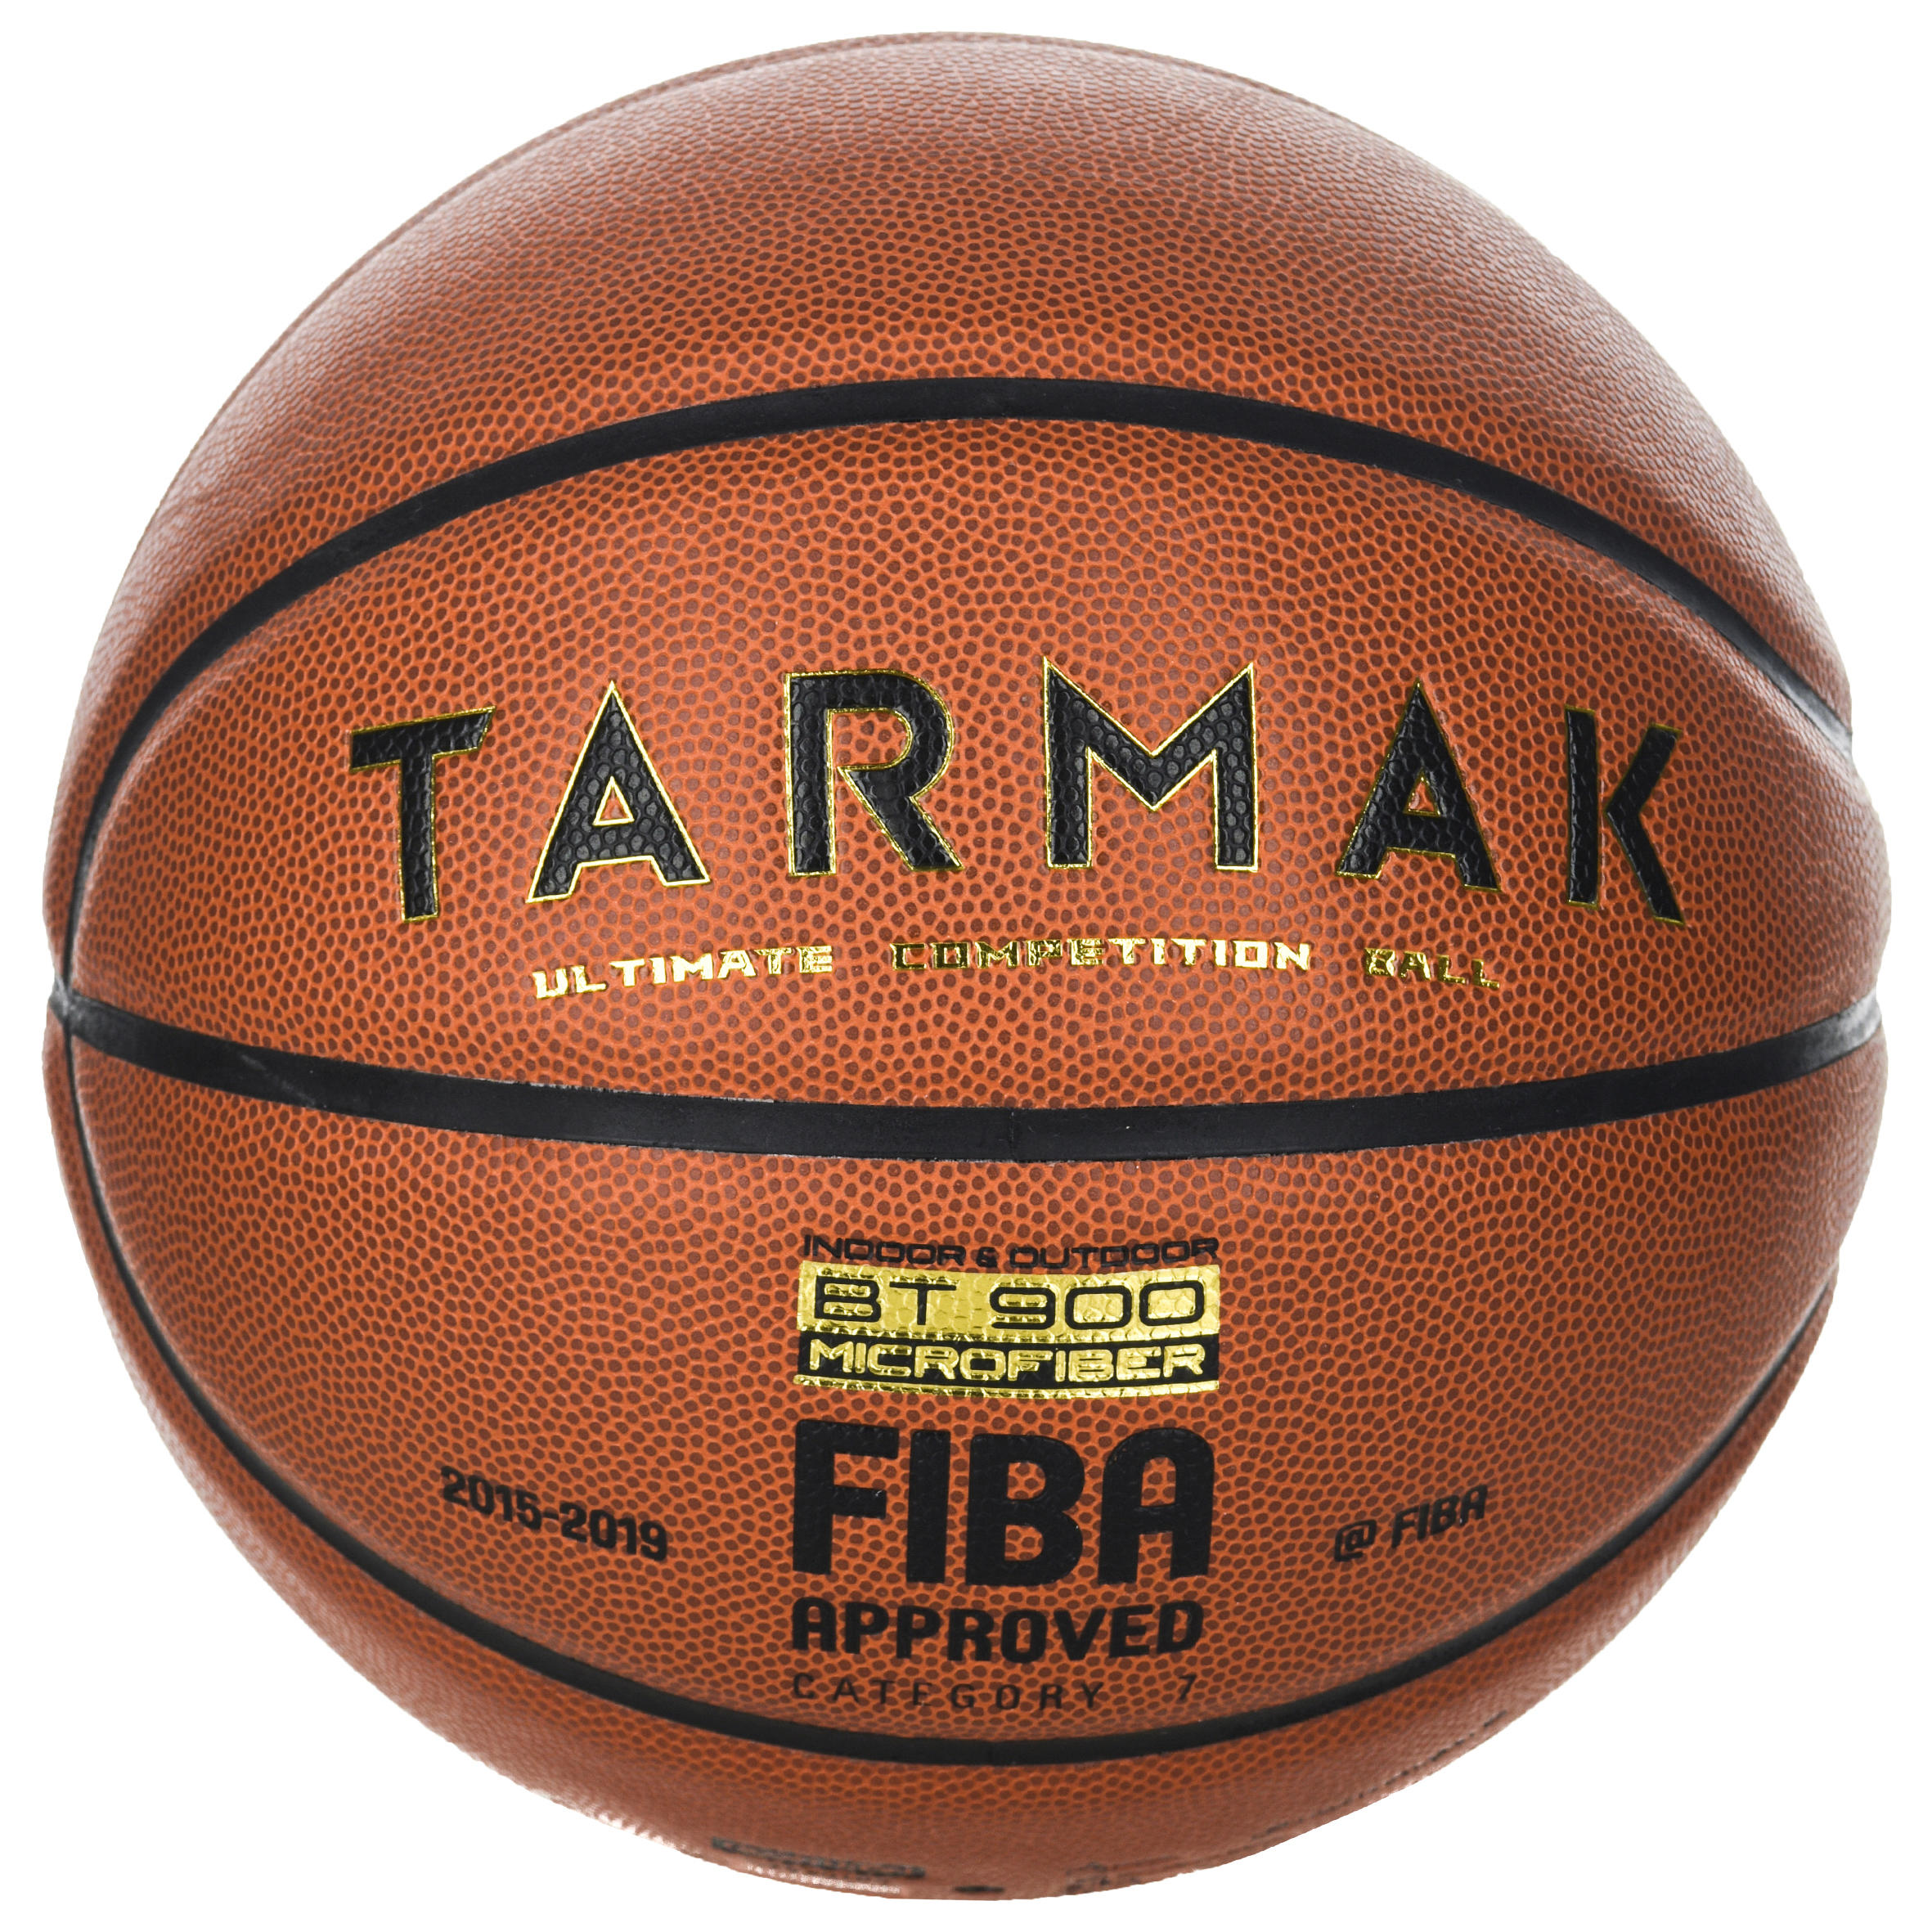 [ส่งฟรี ] ลูกบาสเกตบอล🏀 เบอร์ 7 ที่ผ่านการรับรองโดย FIBA สำหรับเด็กและผู้ใหญ่รุ่น BT900 Basketball Ball 🏀 BT900 Size 7 Basketball FIBA-approved for boys and adults ลูกบาสเกตบอล 6 7